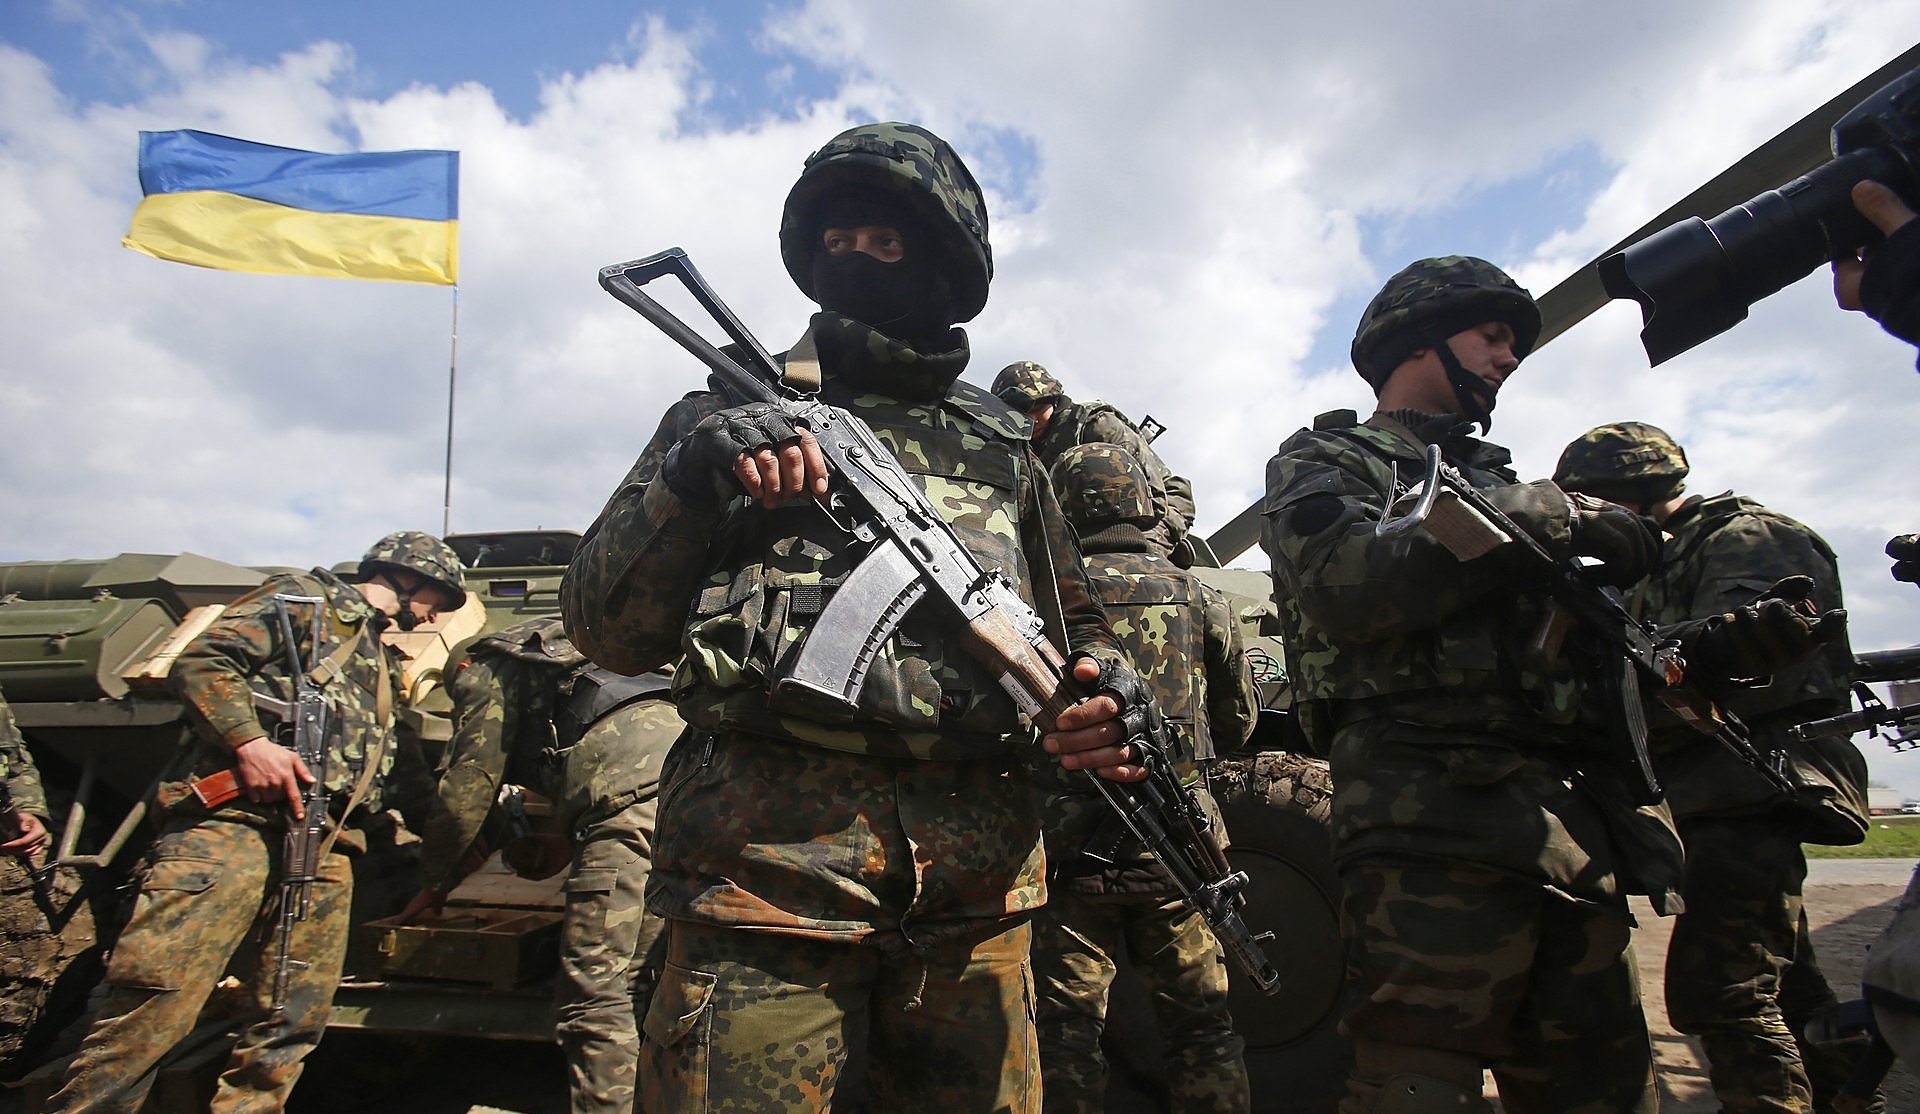 Истинные патриоты помогли остановить захватчиков России на Донбассе: 14 марта наша страна отмечает День украинского добровольца